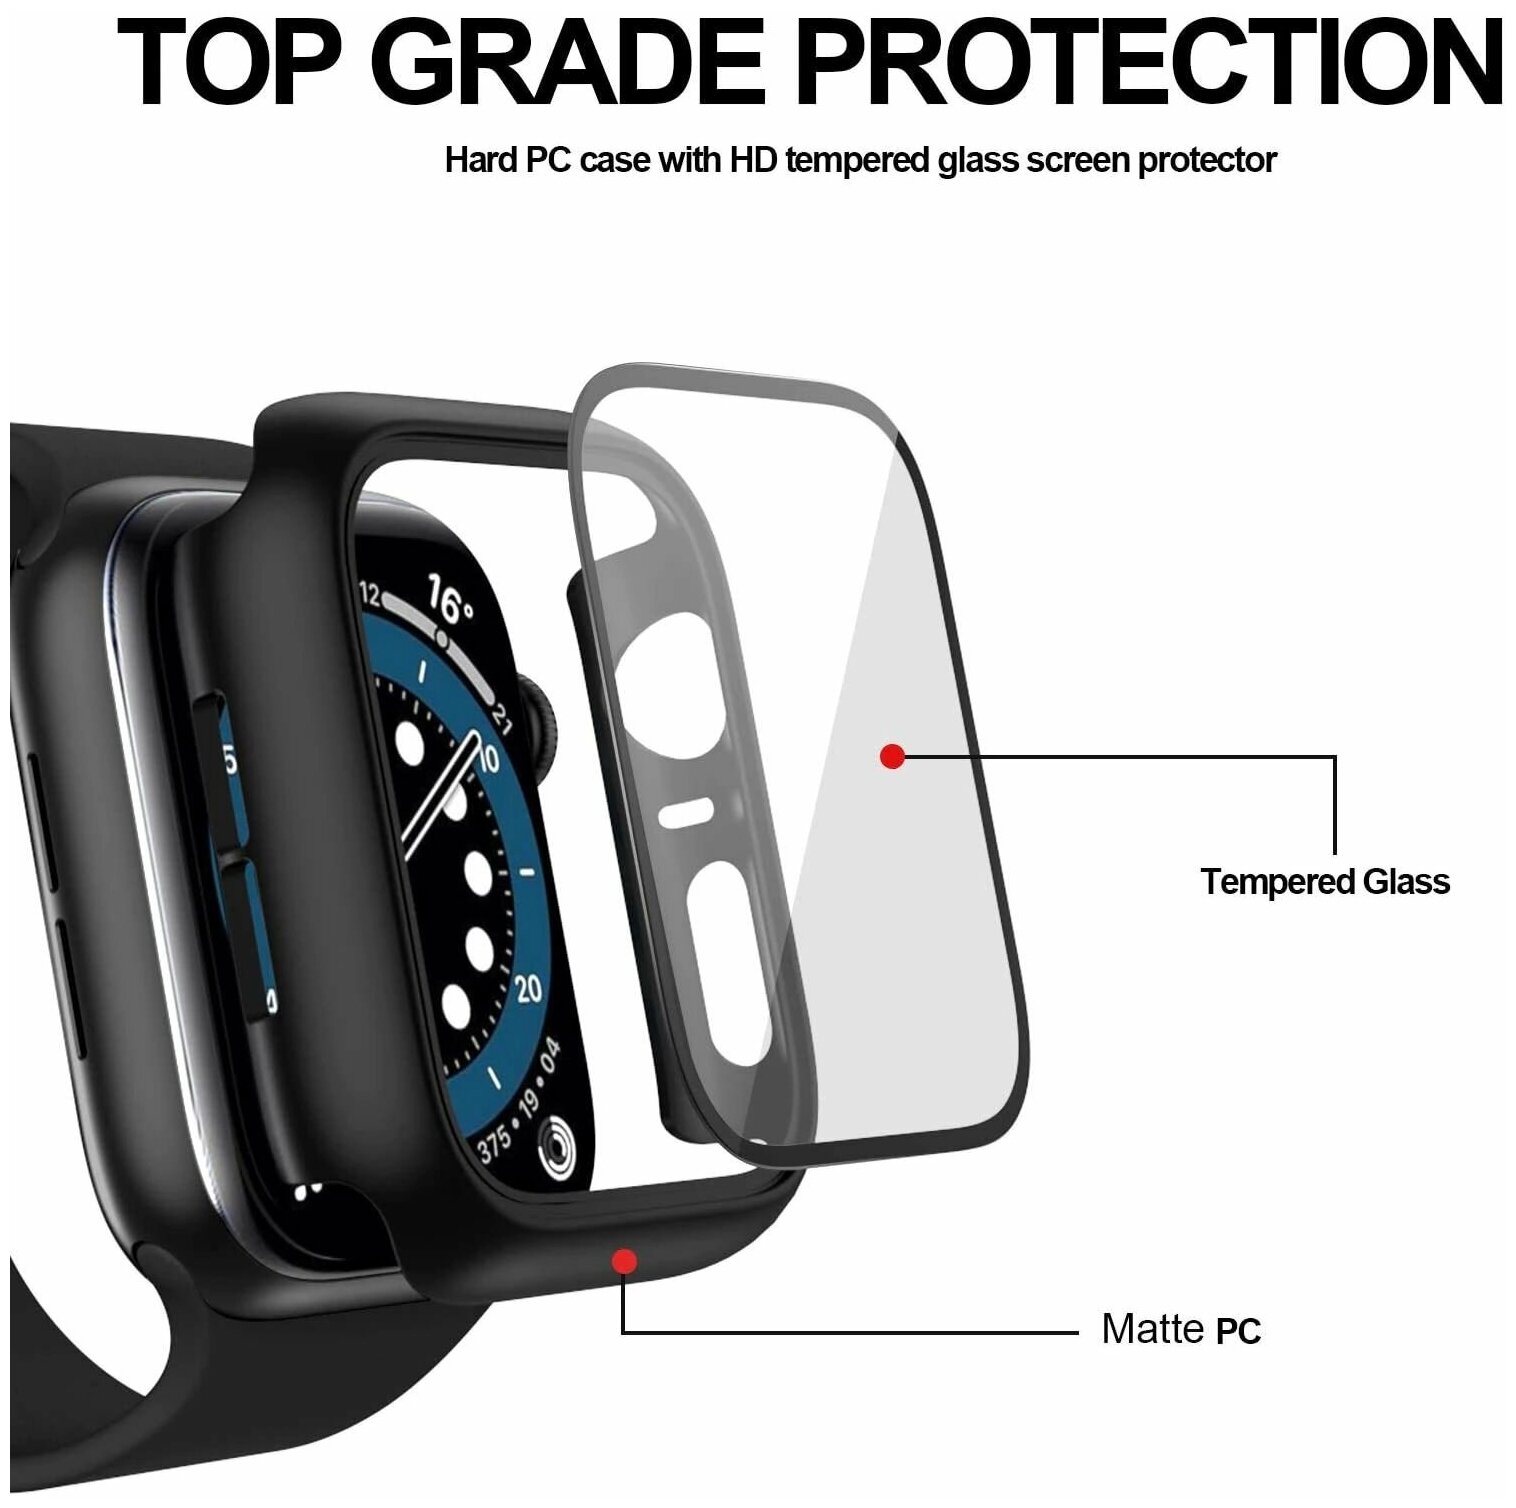 Защитный противоударный чехол+стекло для корпуса Apple Watch Series 1, 2, 3 42 мм, черный